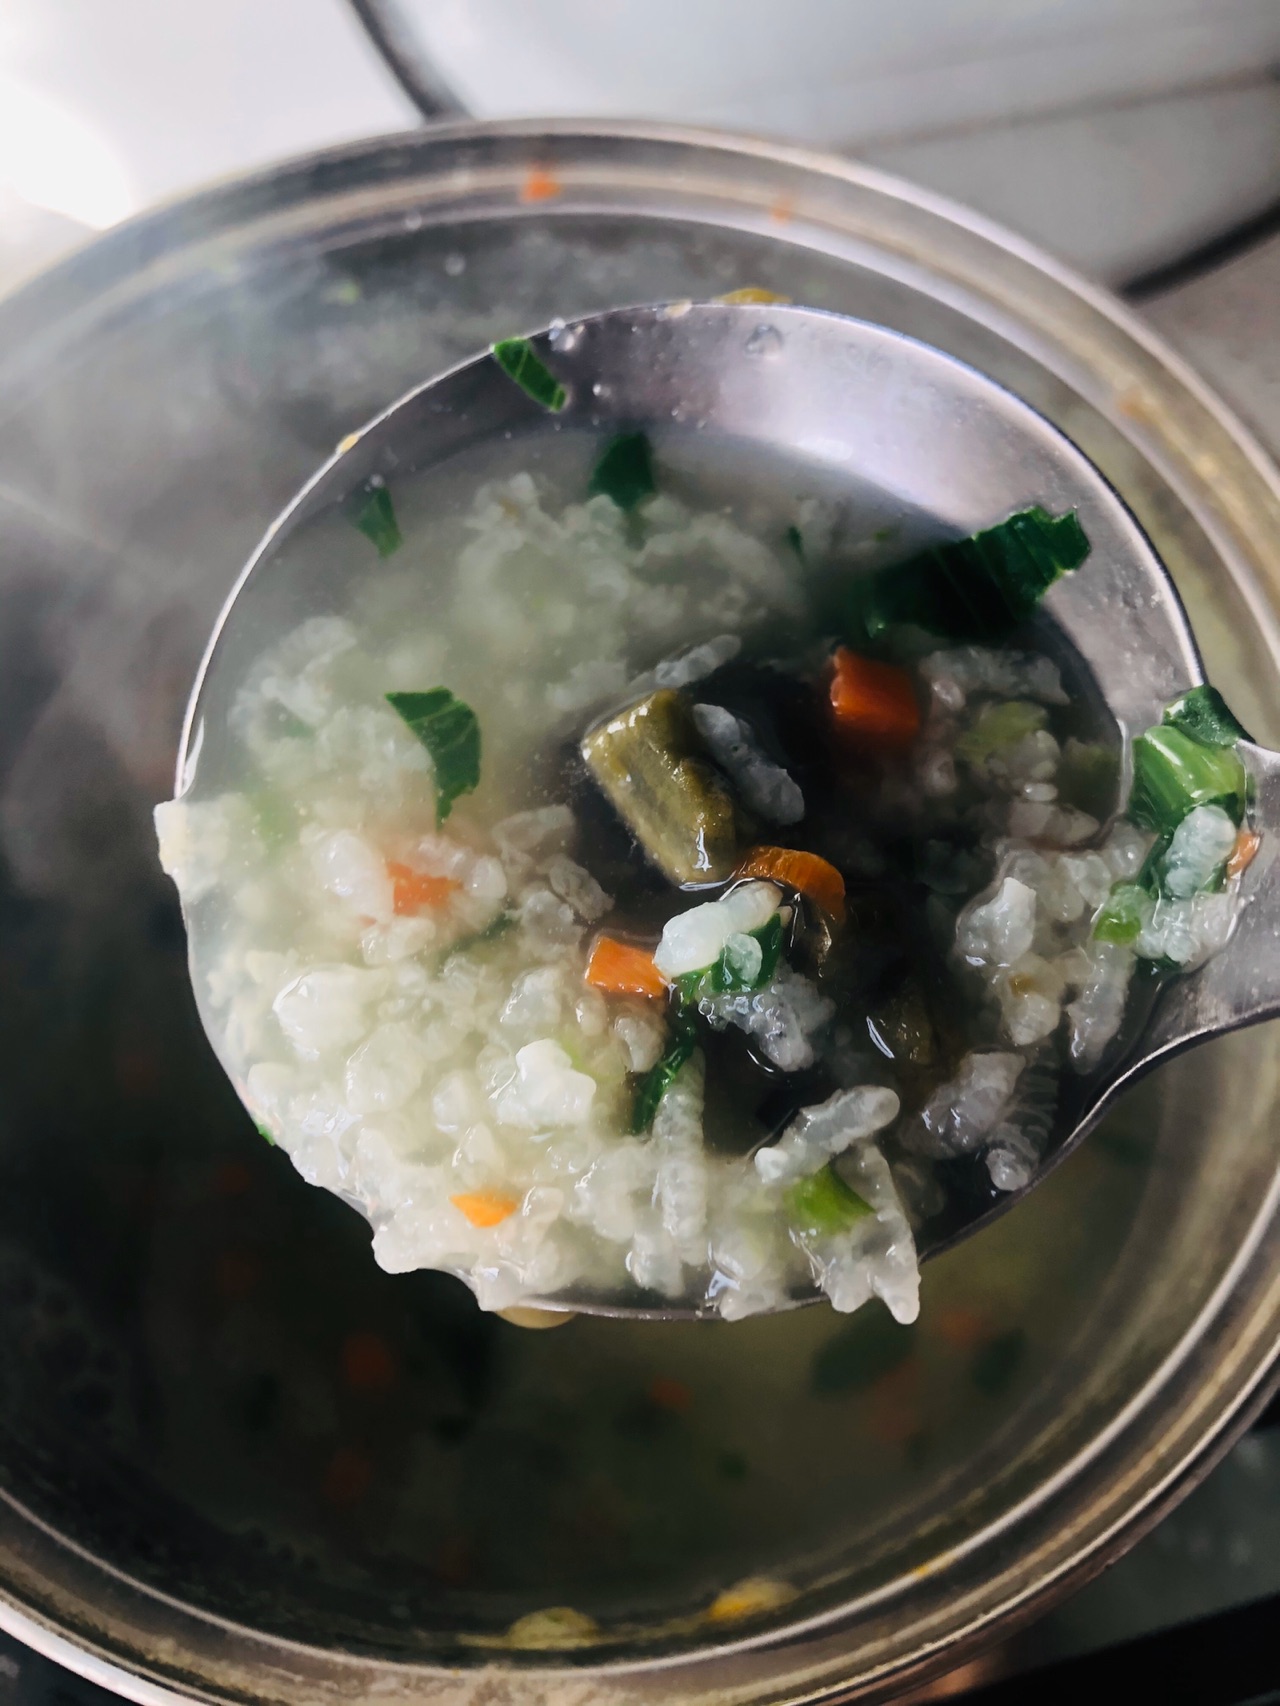 干贝肉沫蔬菜粥,干贝肉沫蔬菜粥的家常做法 - 美食杰干贝肉沫蔬菜粥做法大全